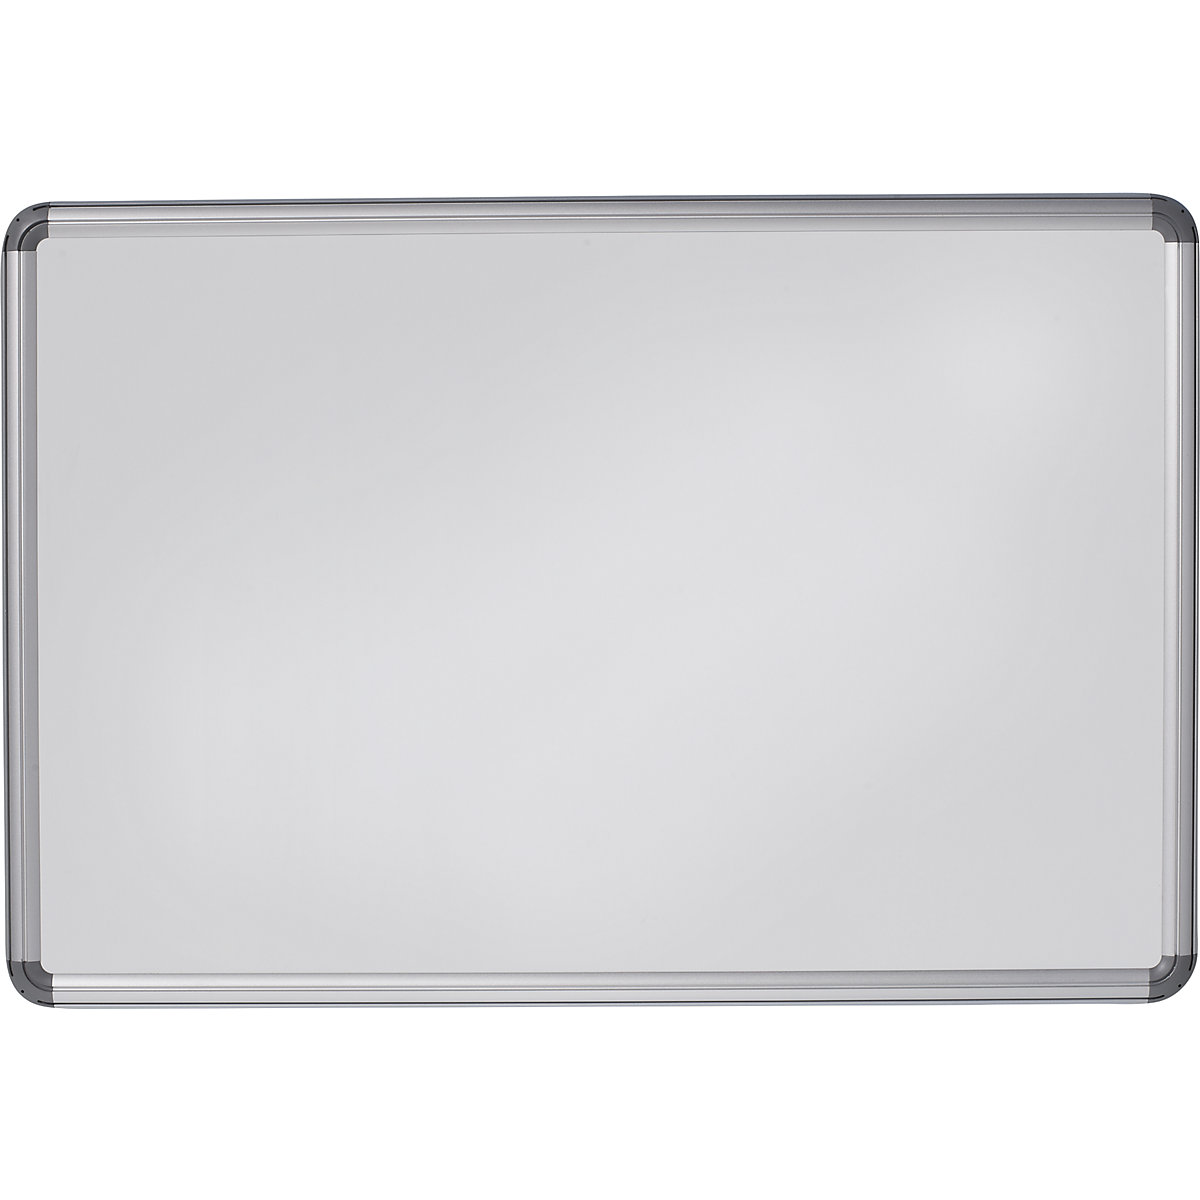 Elegantní nástěnná tabule – eurokraft pro, ocelový plech, lakováno, š x v 900 x 600 mm, bílá